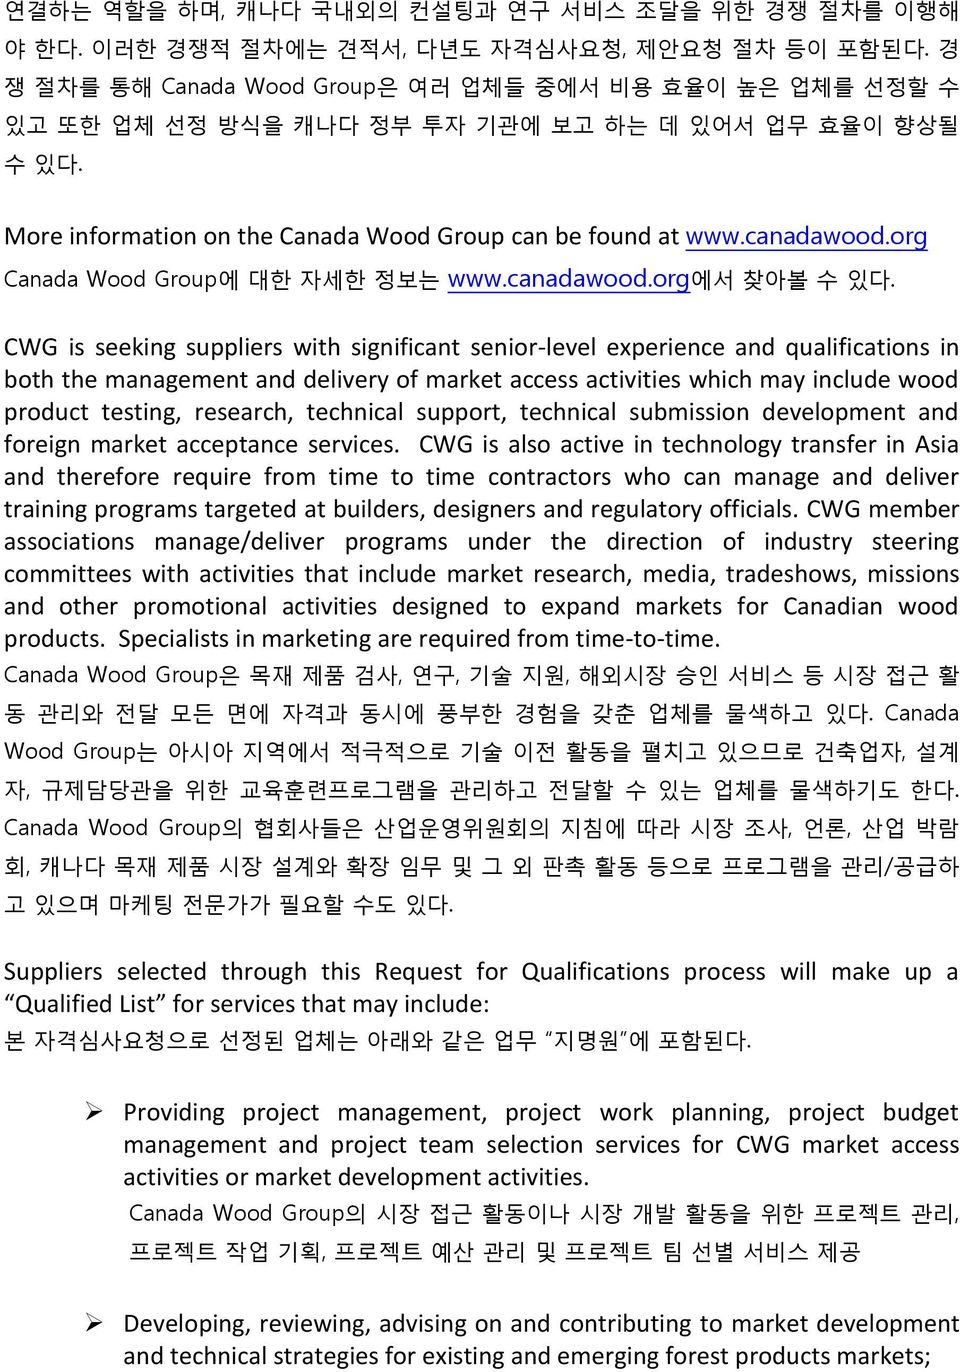 org Canada Wood Group에 대한 자세한 정보는 www.canadawood.org에서 찾아볼 수 있다.